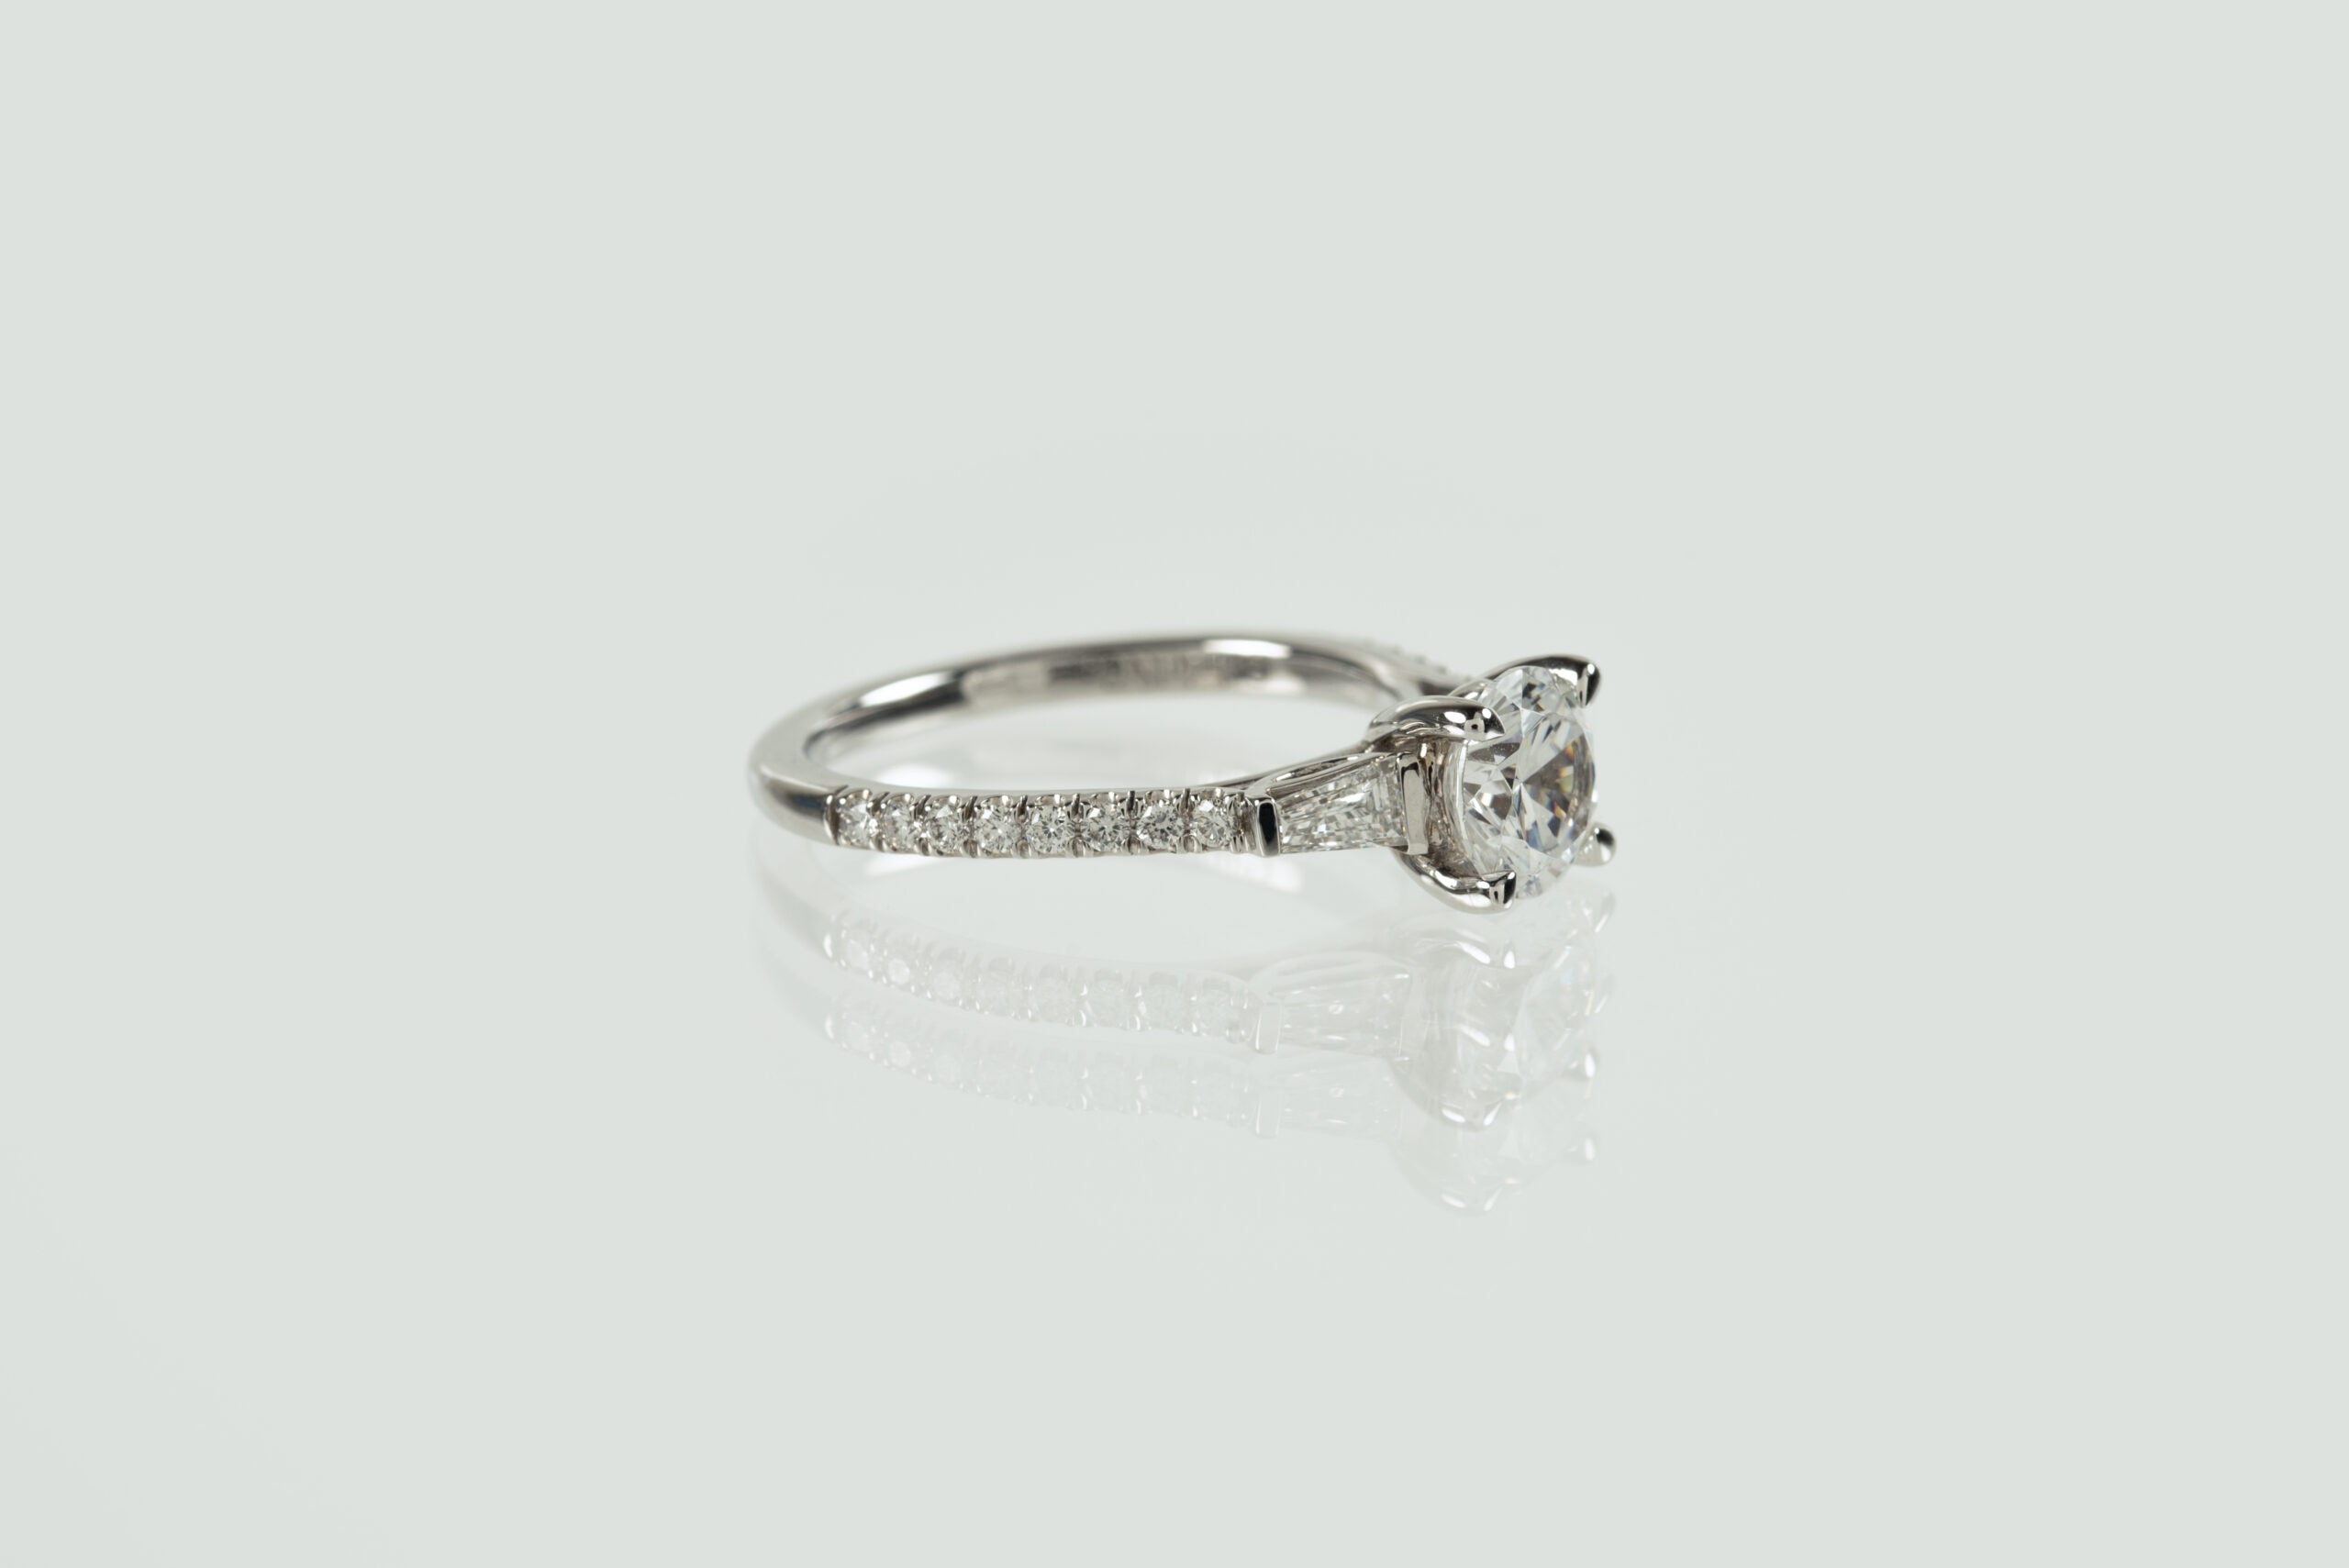 14K White Gold Diamond Engagement Ring